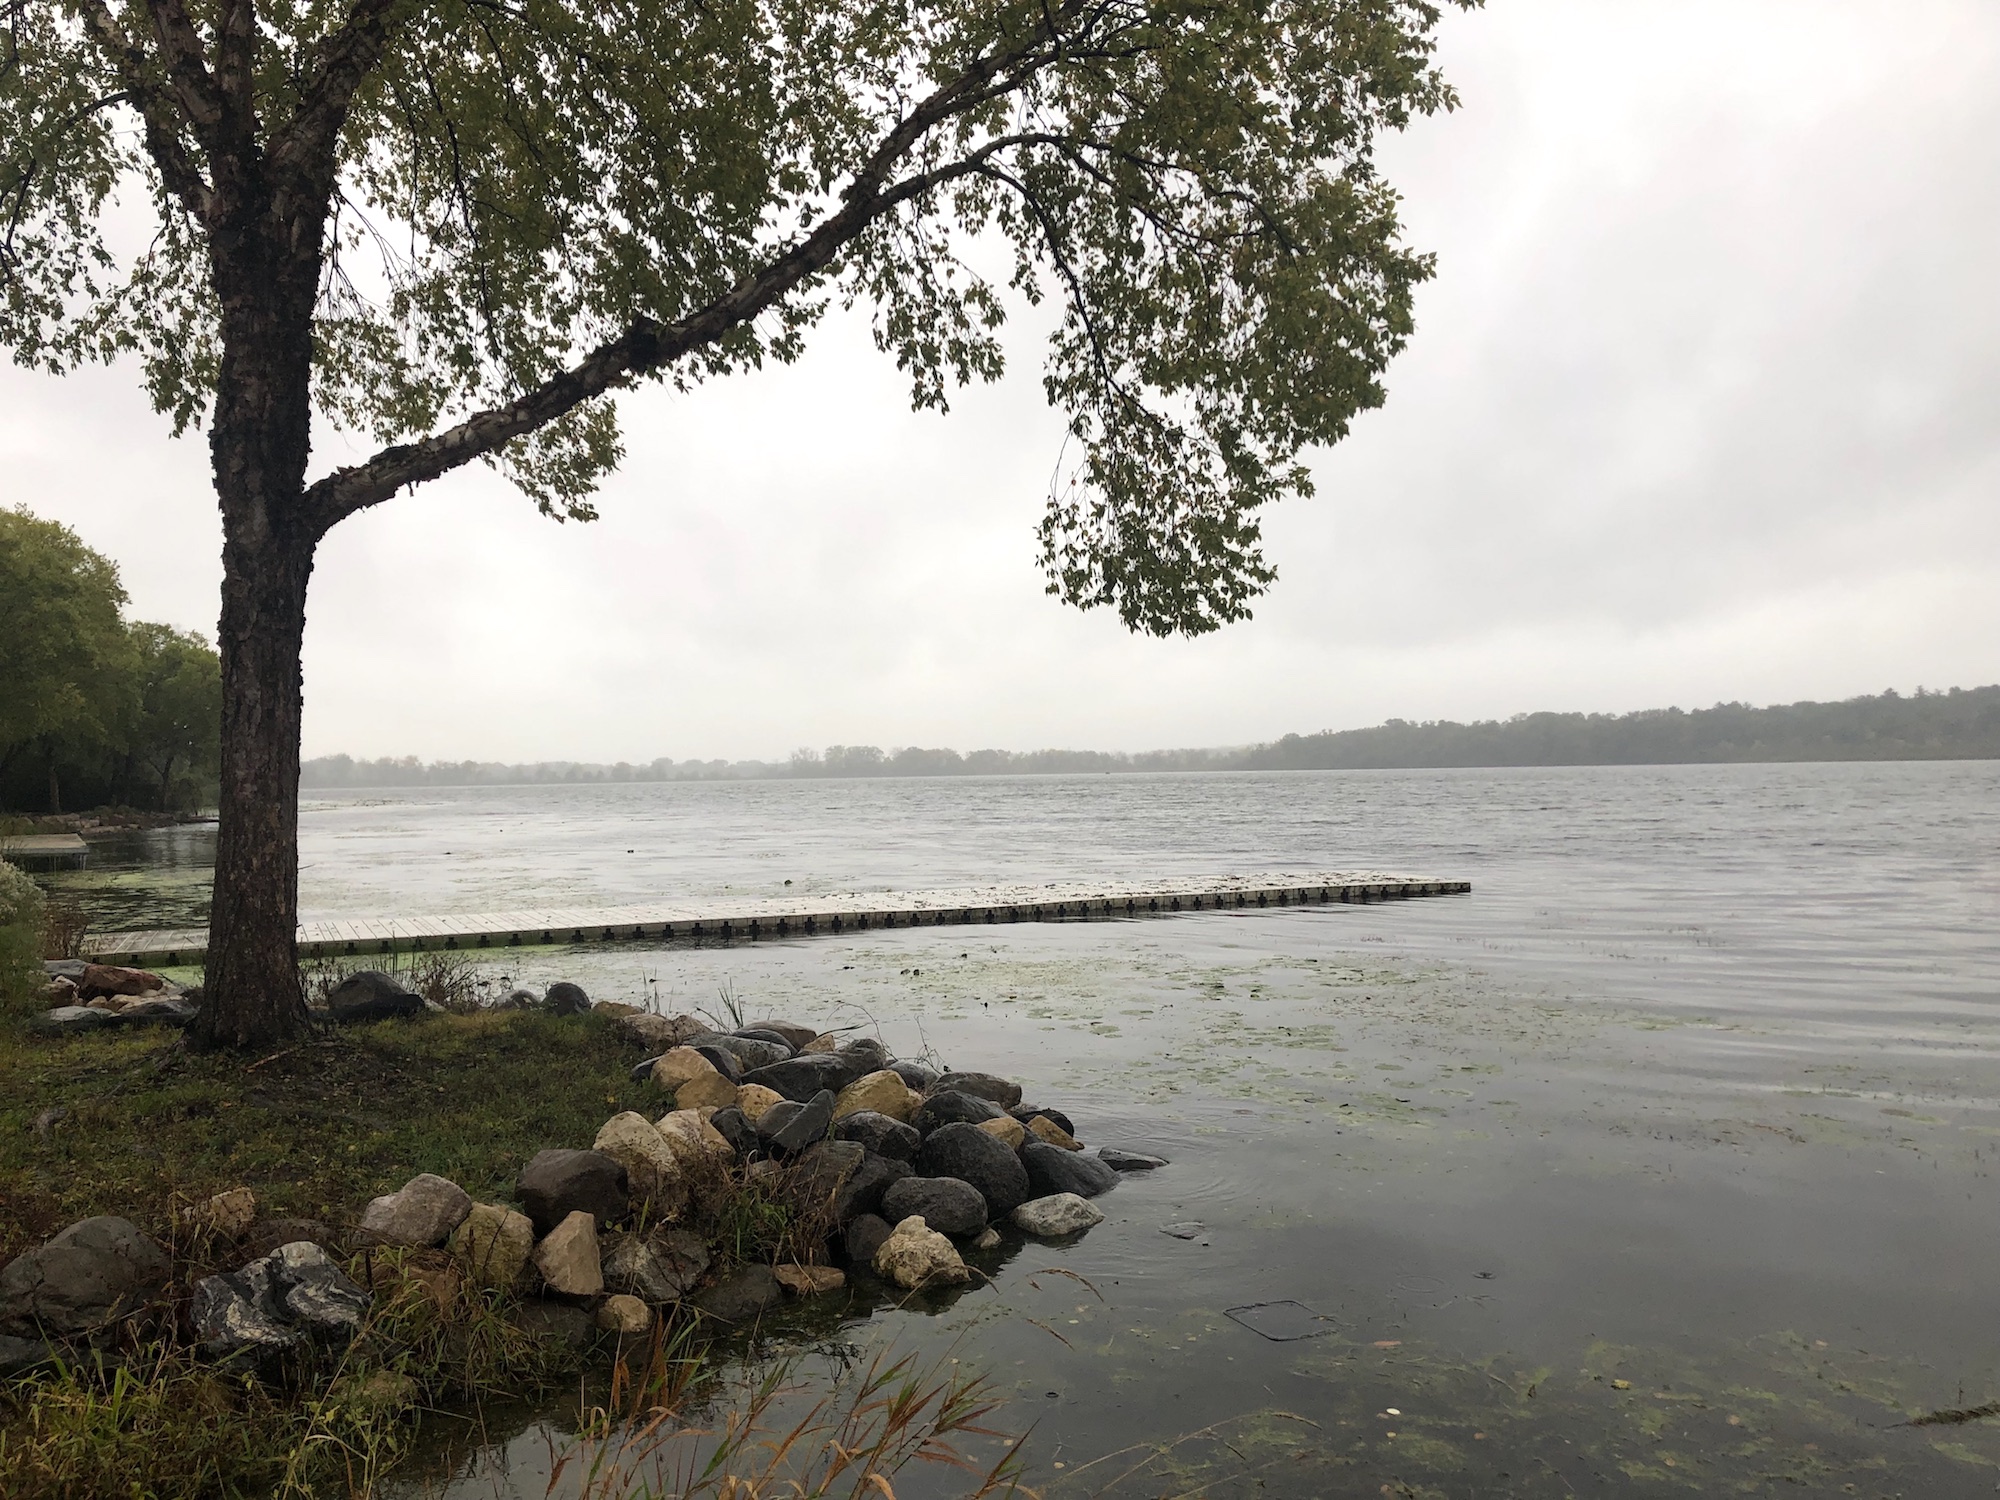 Lake Wingra on September 29, 2019.